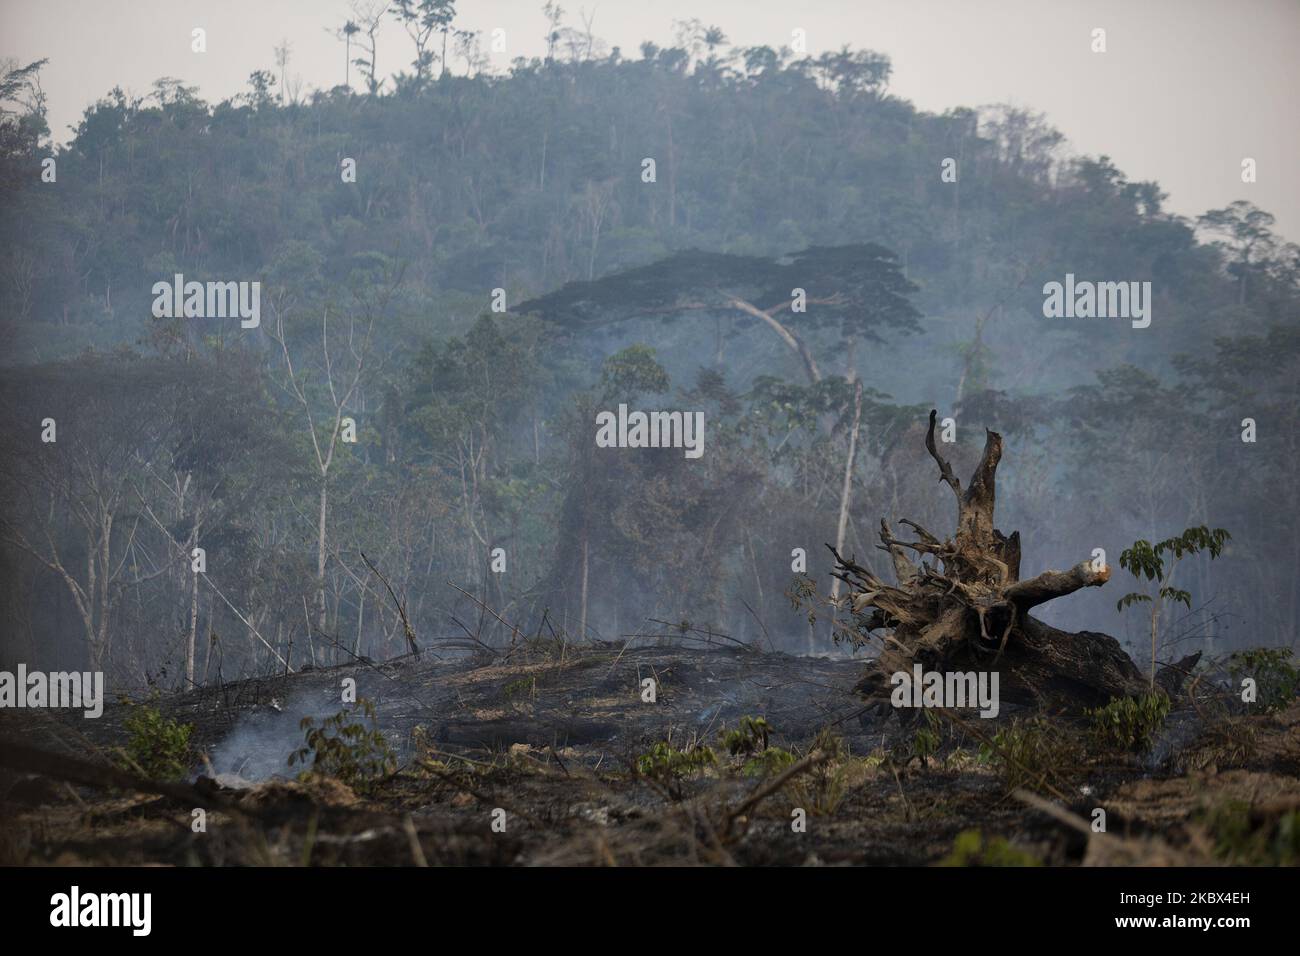 Fumée brûlée dans la forêt amazonienne de 13 août 2020. Le gouvernement brésilien a interdit les incendies dans tout le pays. Malgré le veto, des foyers d'incendie se produisent dans la région de Novo Progresso, dans l'État sud de Pará, au Brésil. (Photo d'Ernesto Carriço/NurPhoto) Banque D'Images